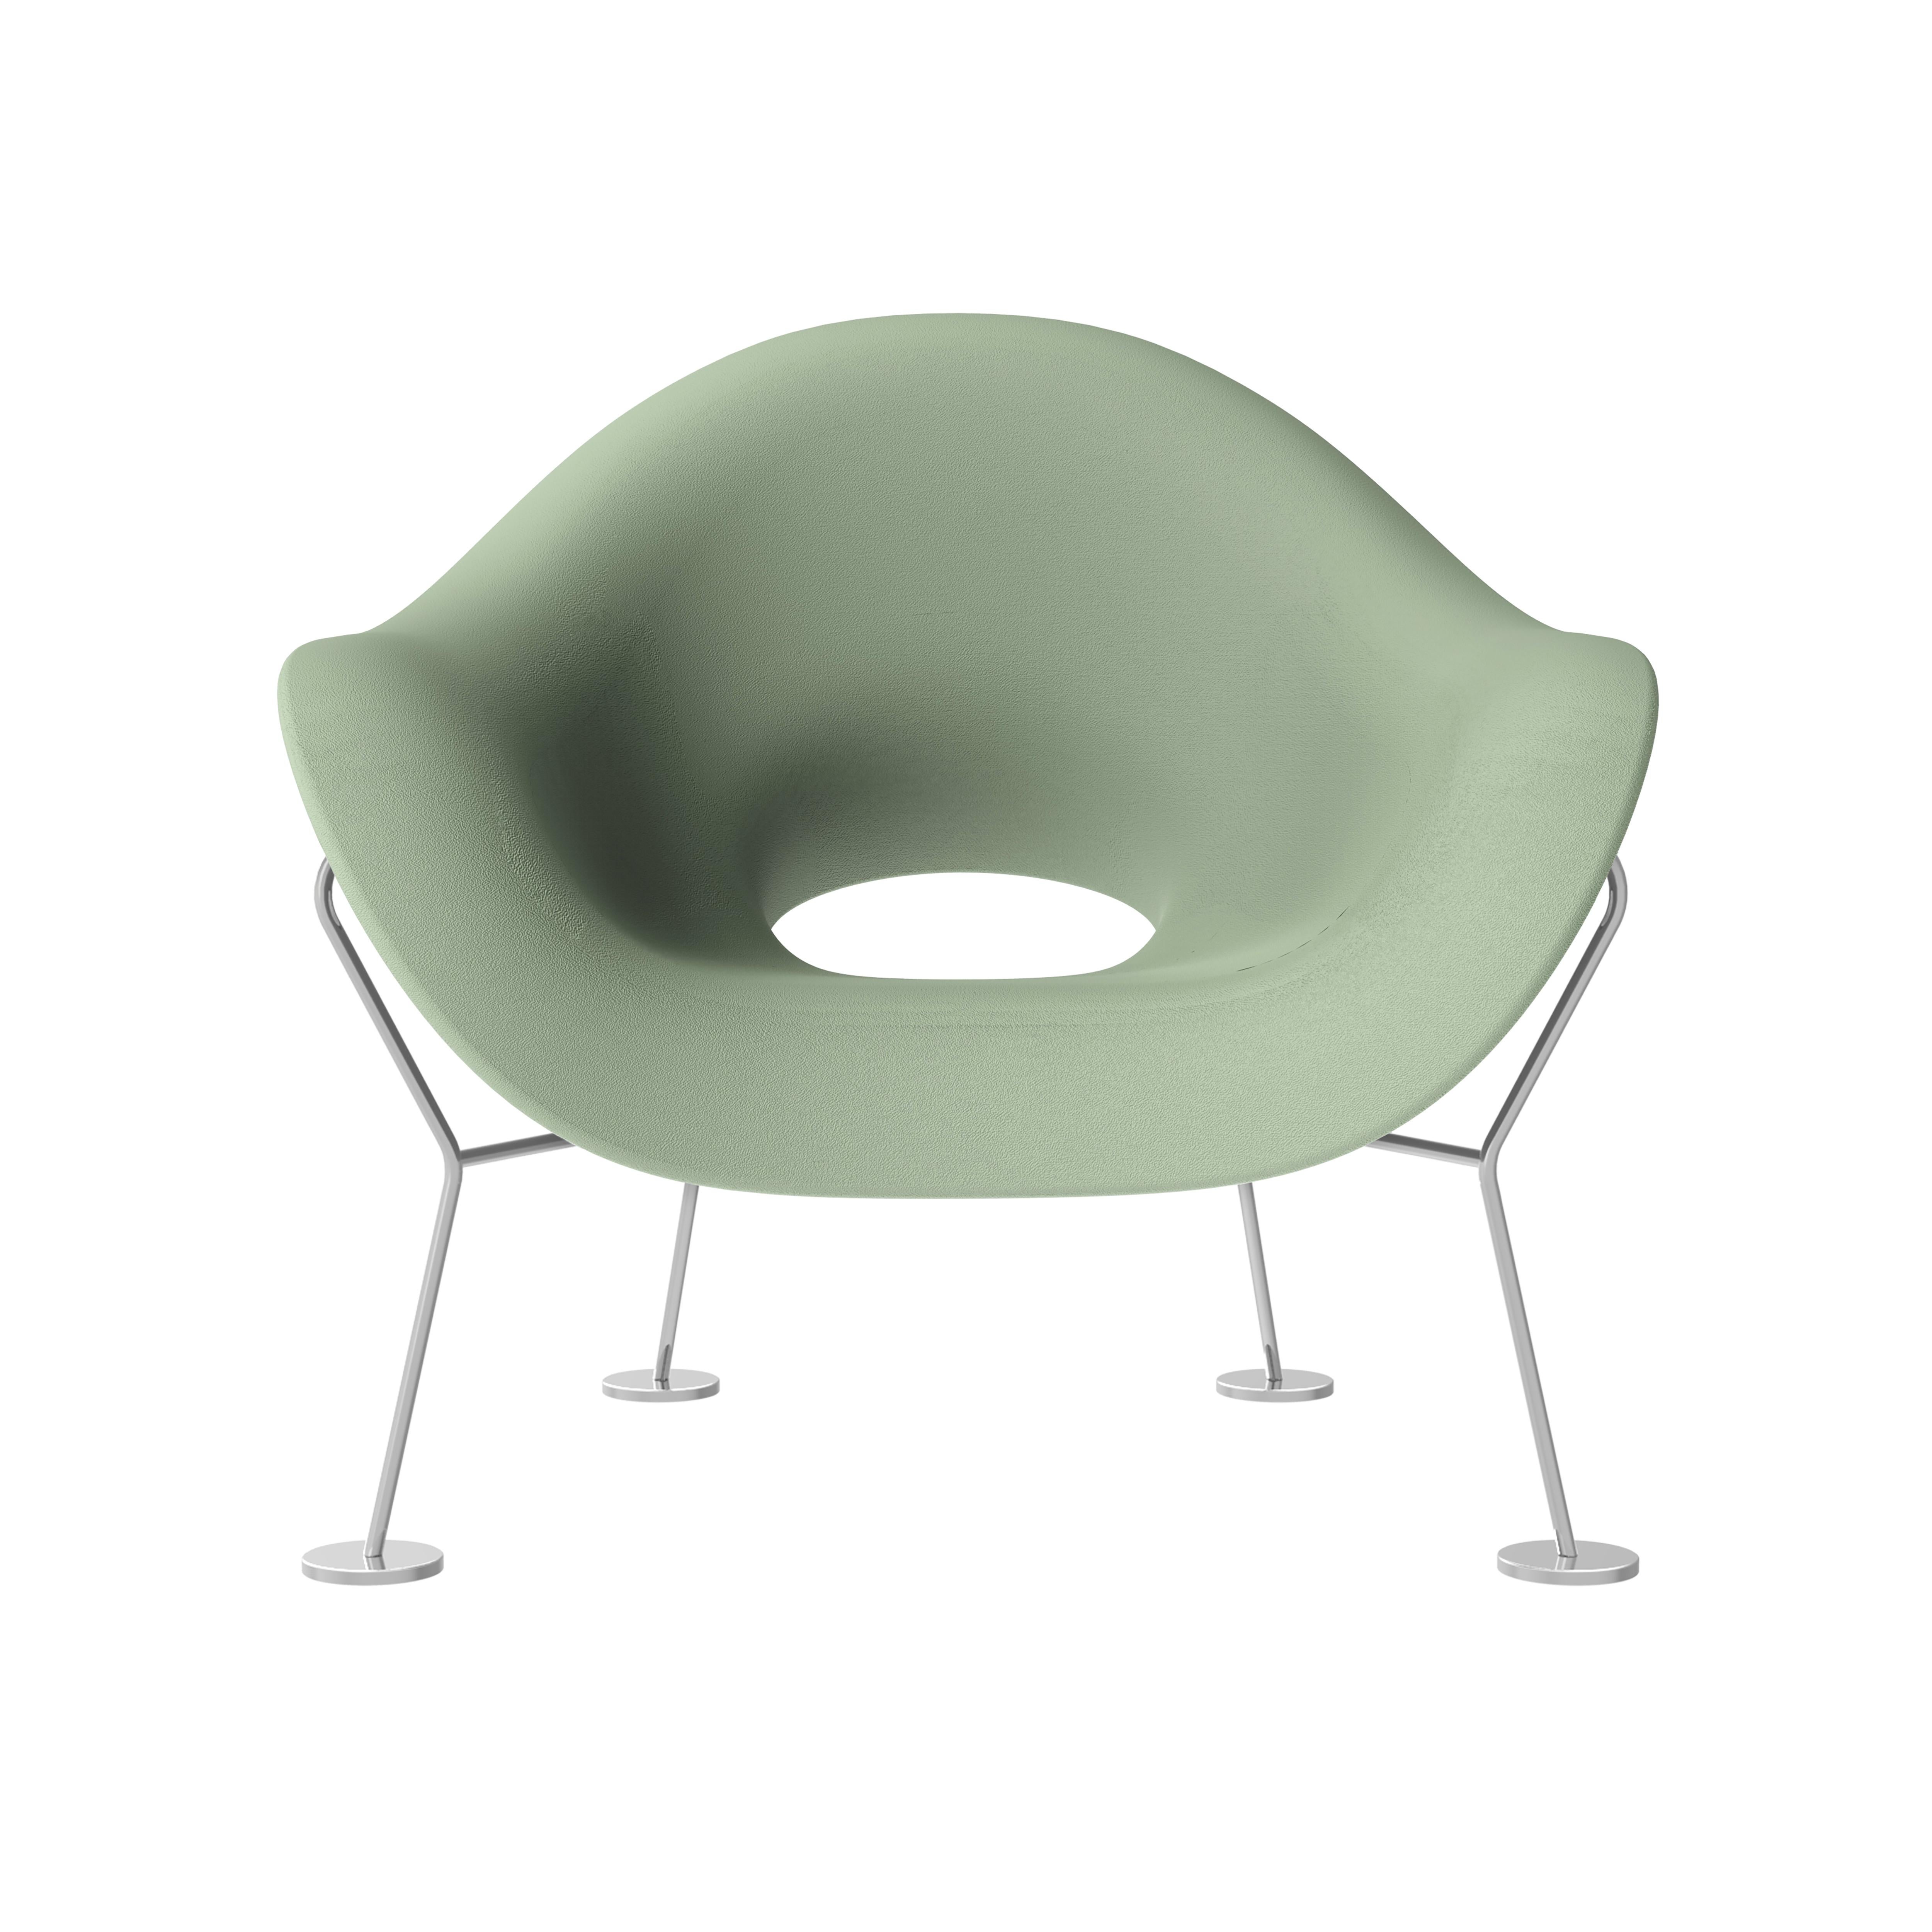 Im Angebot: Moderner Plüsch Moderner schwarzer Beistell- oder Sessel mit verchromten Beinen von Andrea Branzi, Green (Balsam Green)